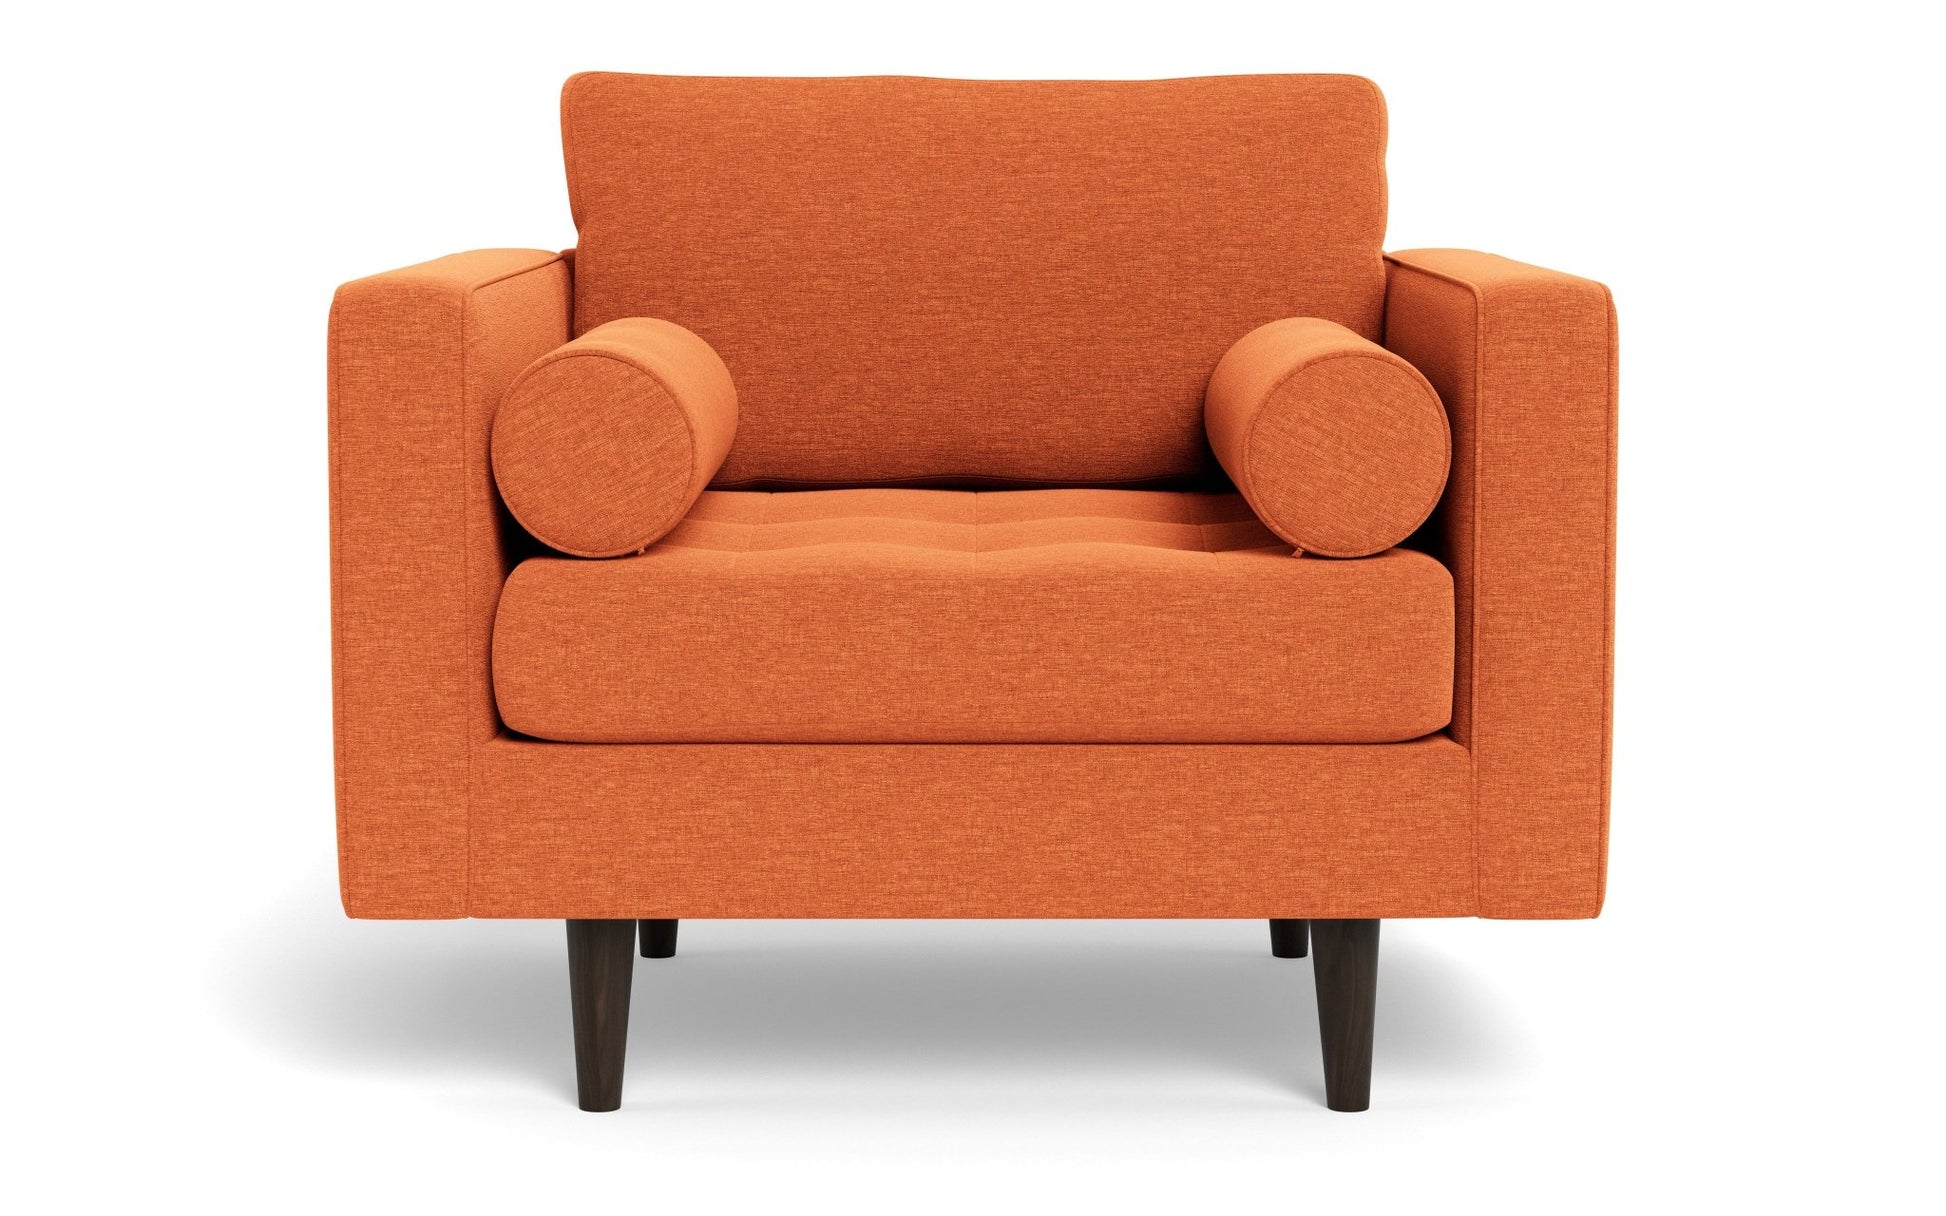 Ladybird Arm Chair - Bennett Orangeade